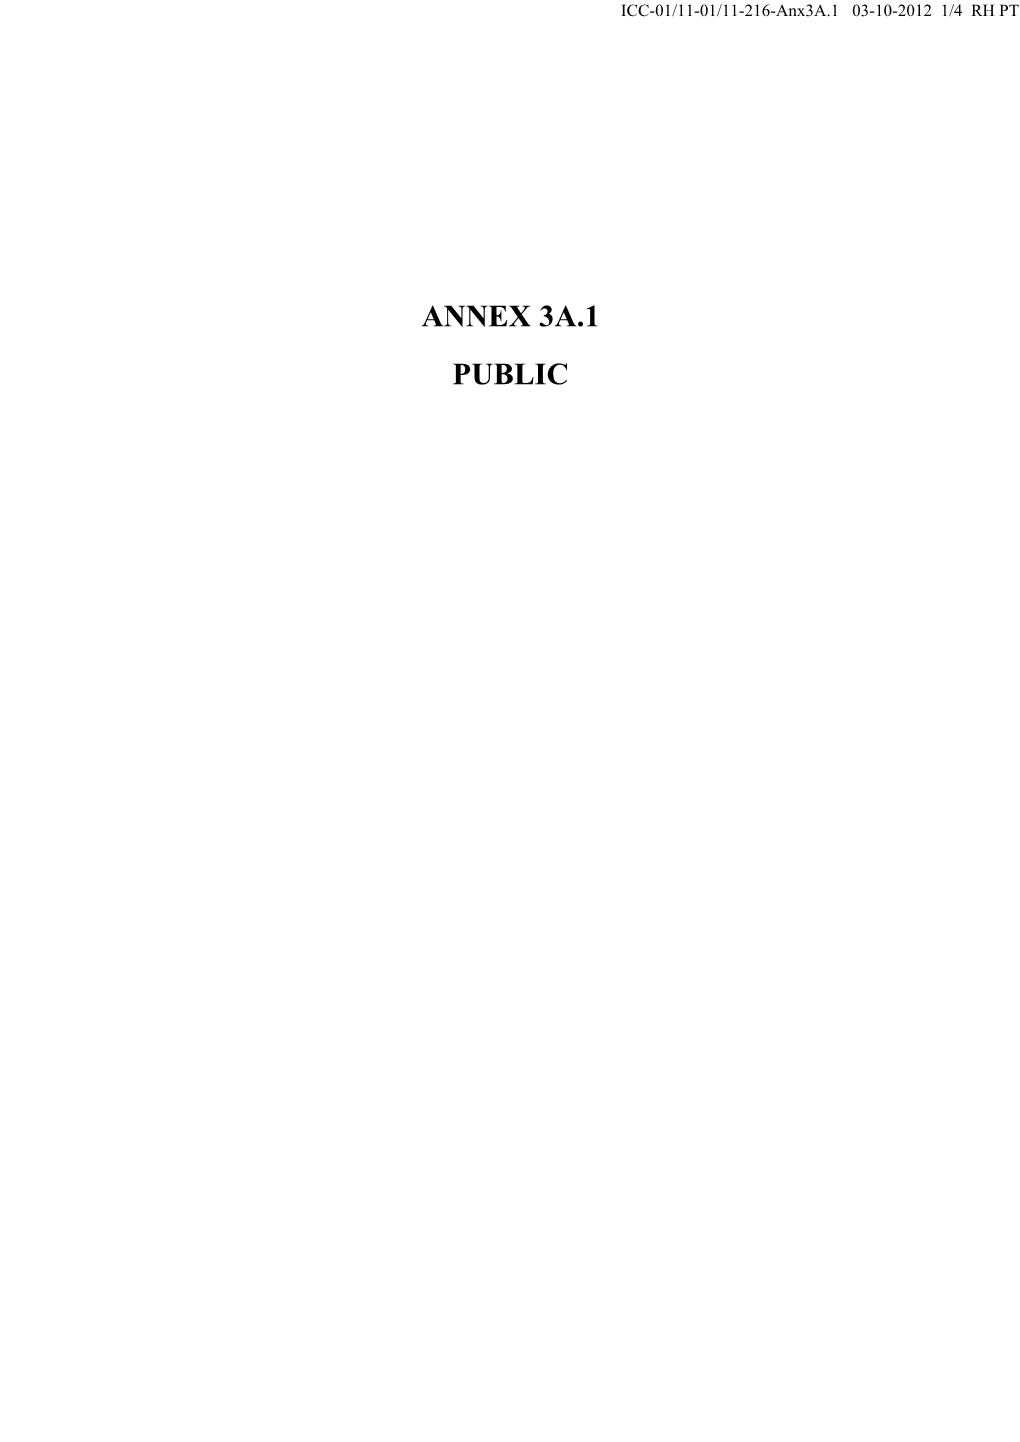 ANNEX 3A.1 PUBLIC ICC-01/11-01/11-216-Anx3a.1 03-10-2012 2/4 RH PT